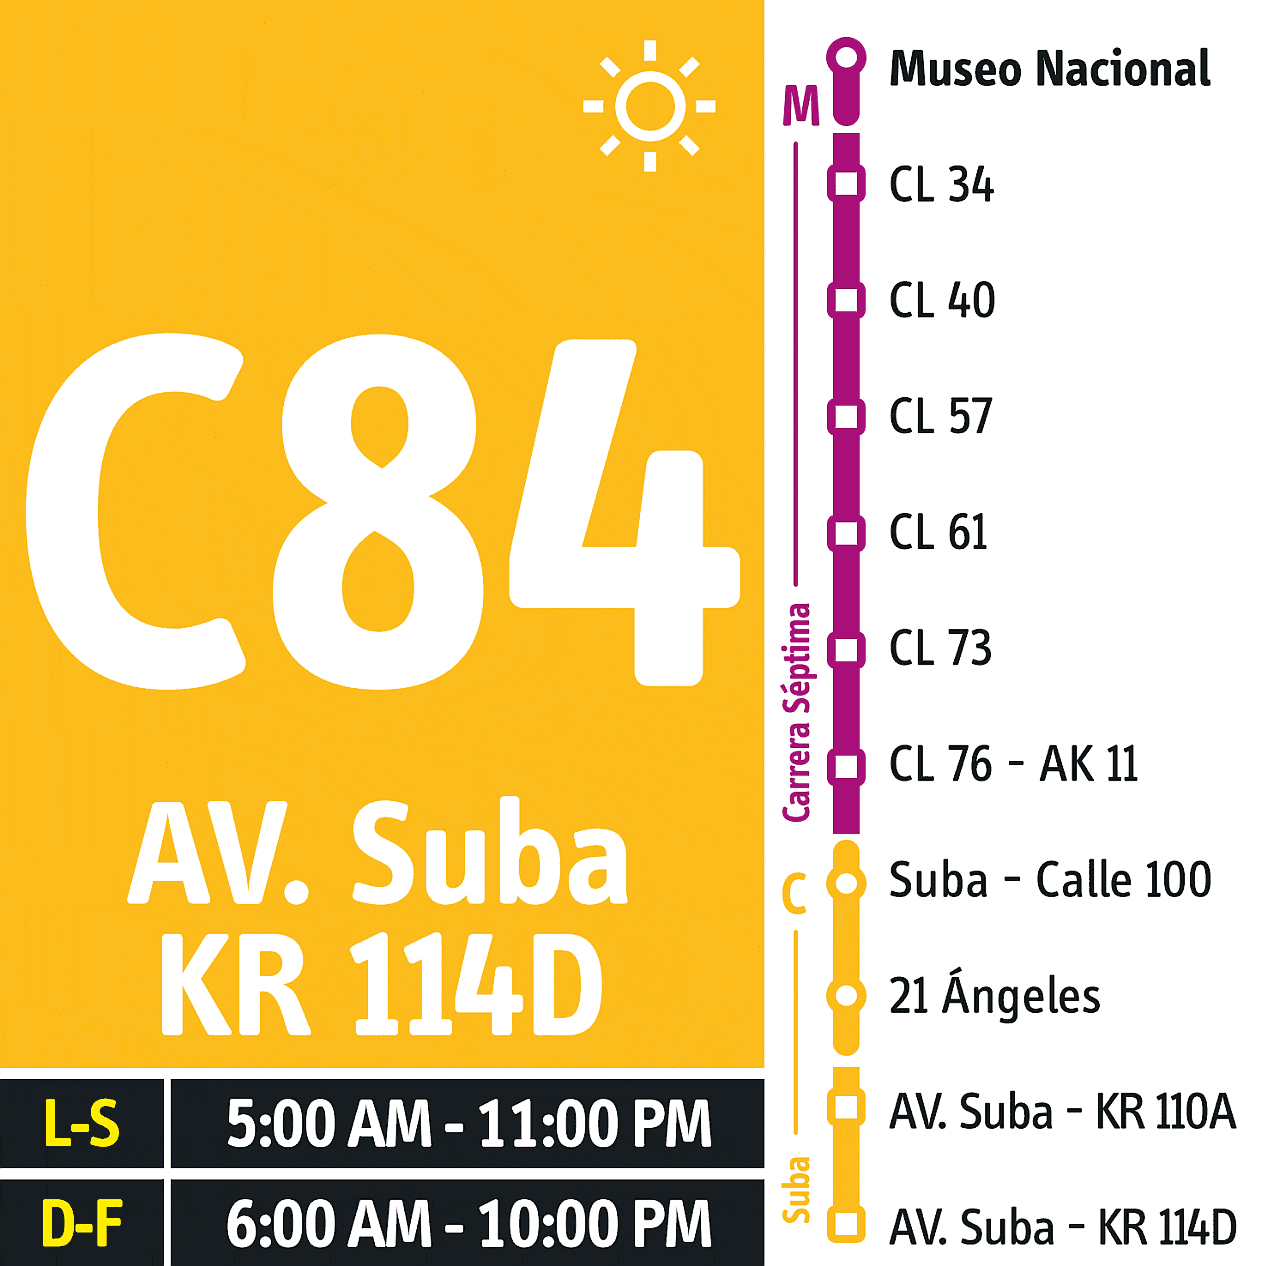 Bus dual C84-M84 - funcionamiento habitual